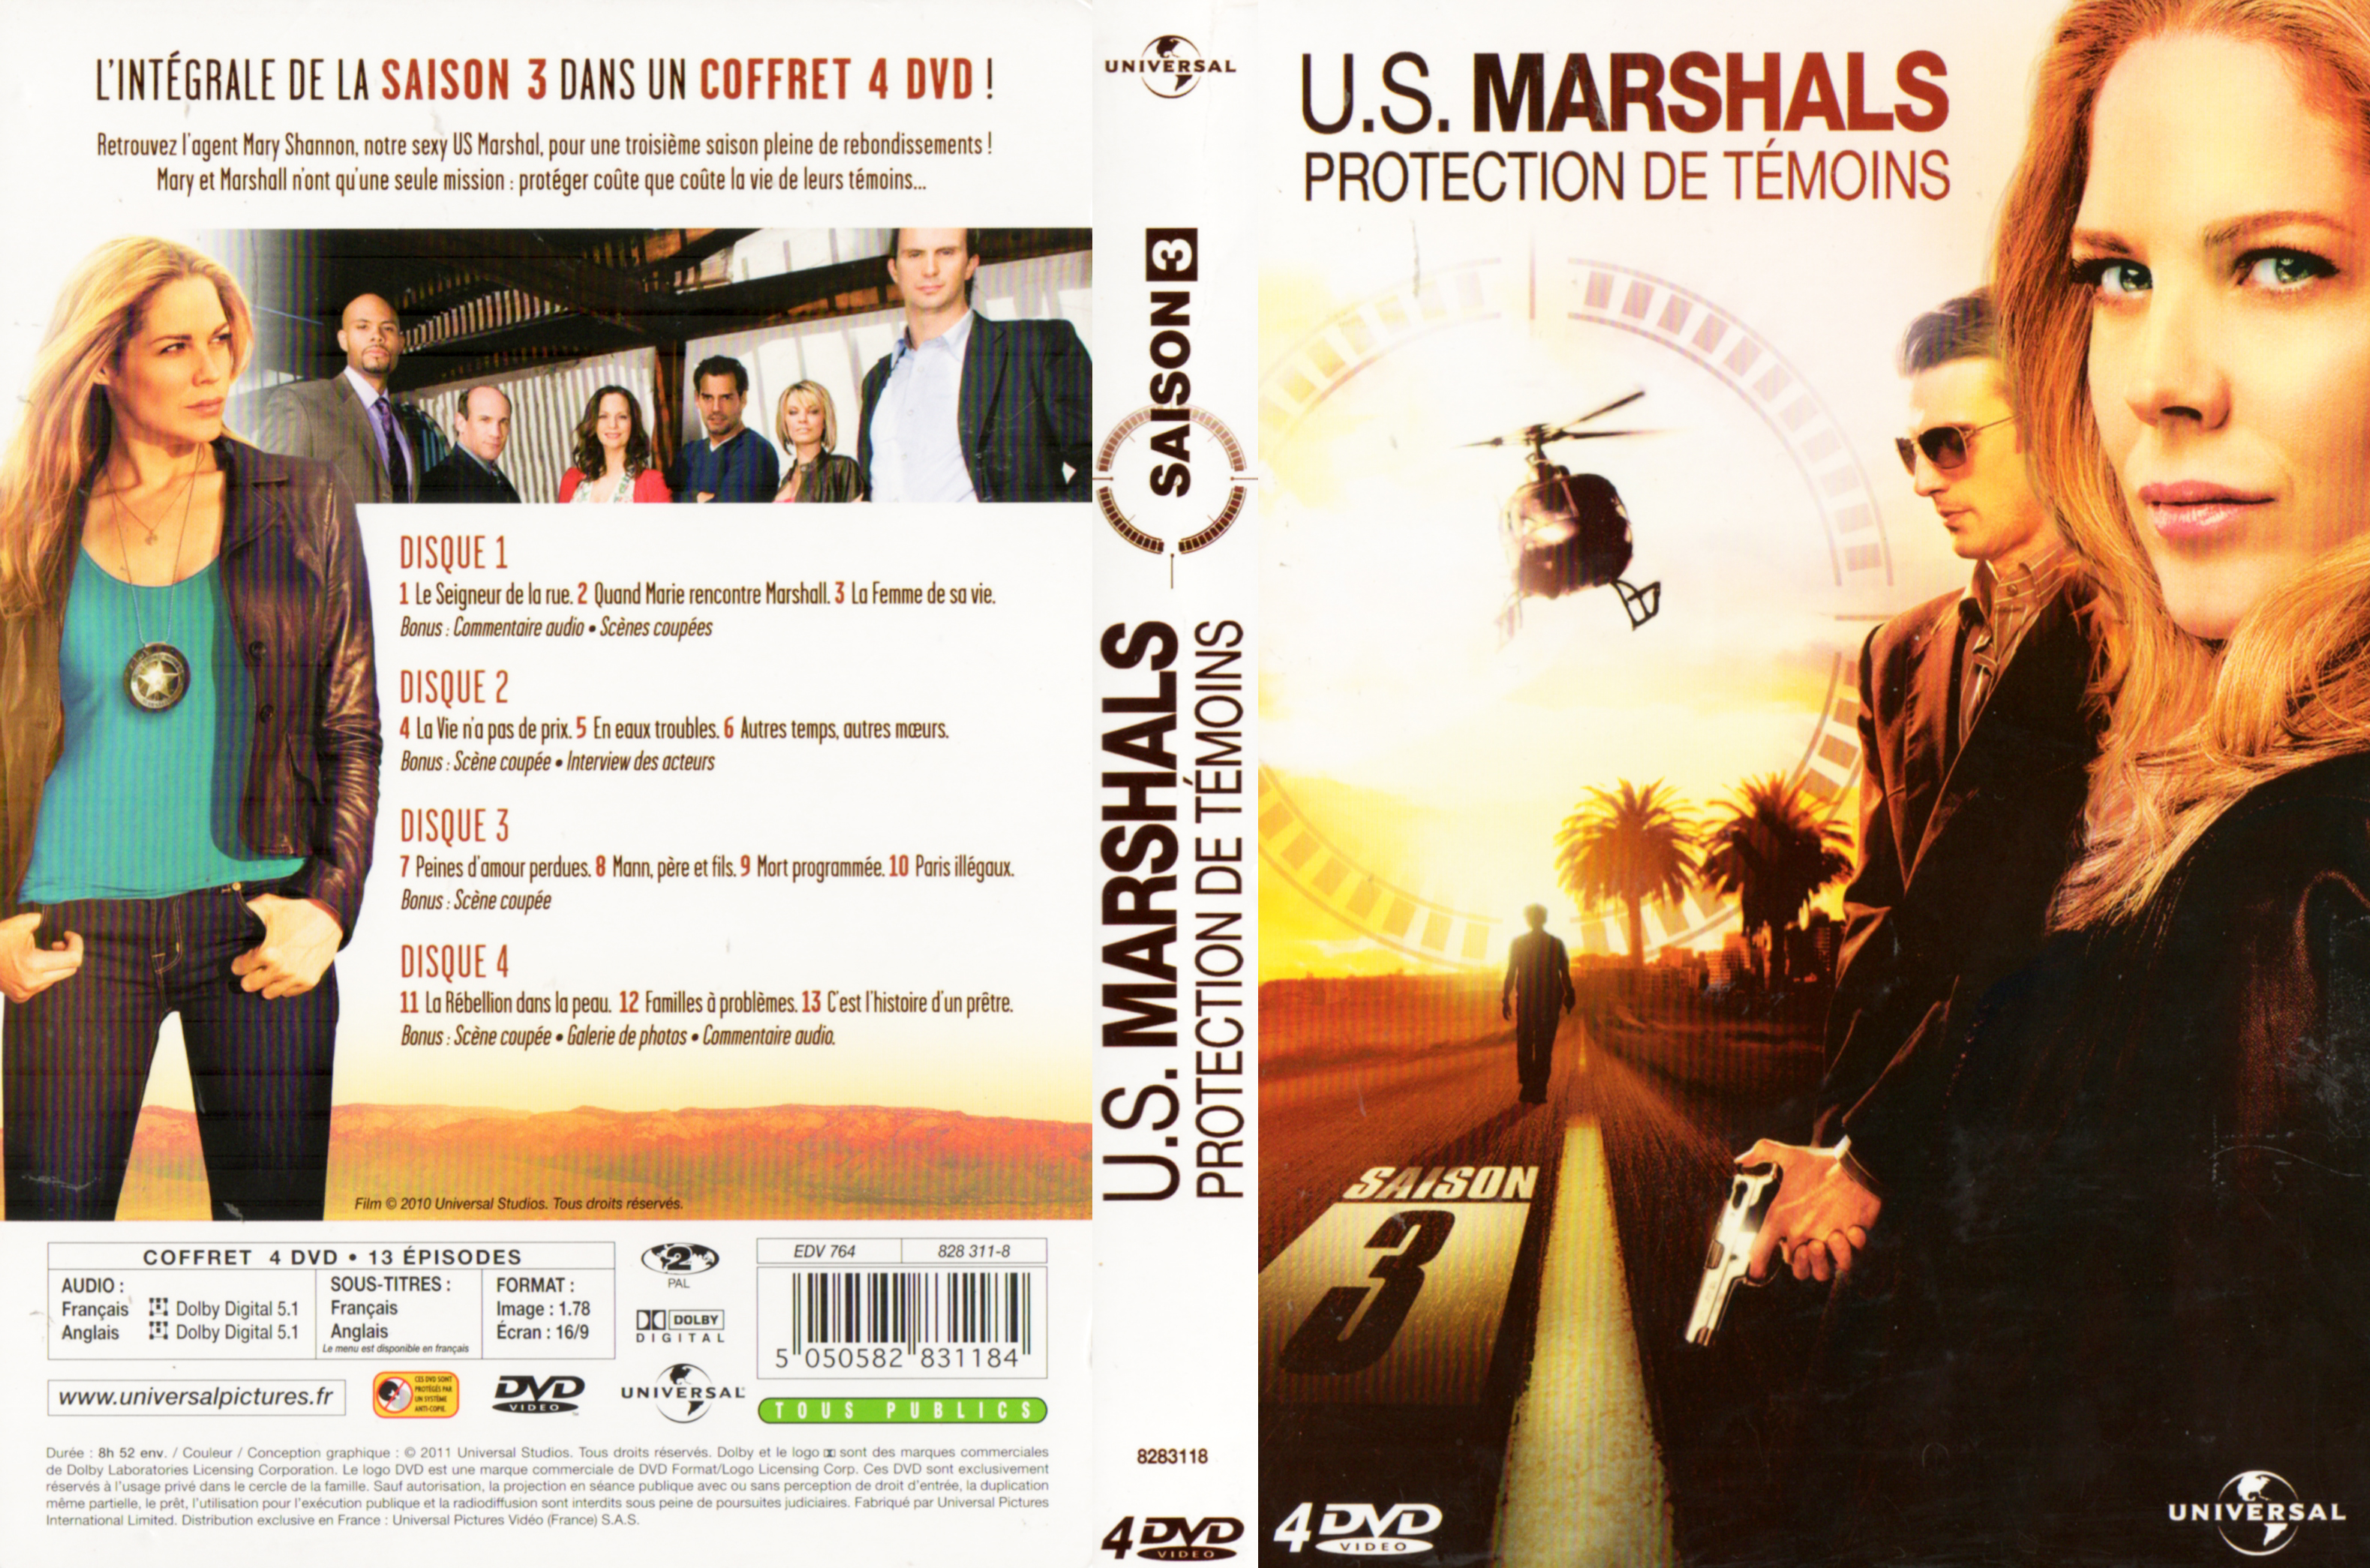 Jaquette DVD US marshals rotection de tmoins Saison 3